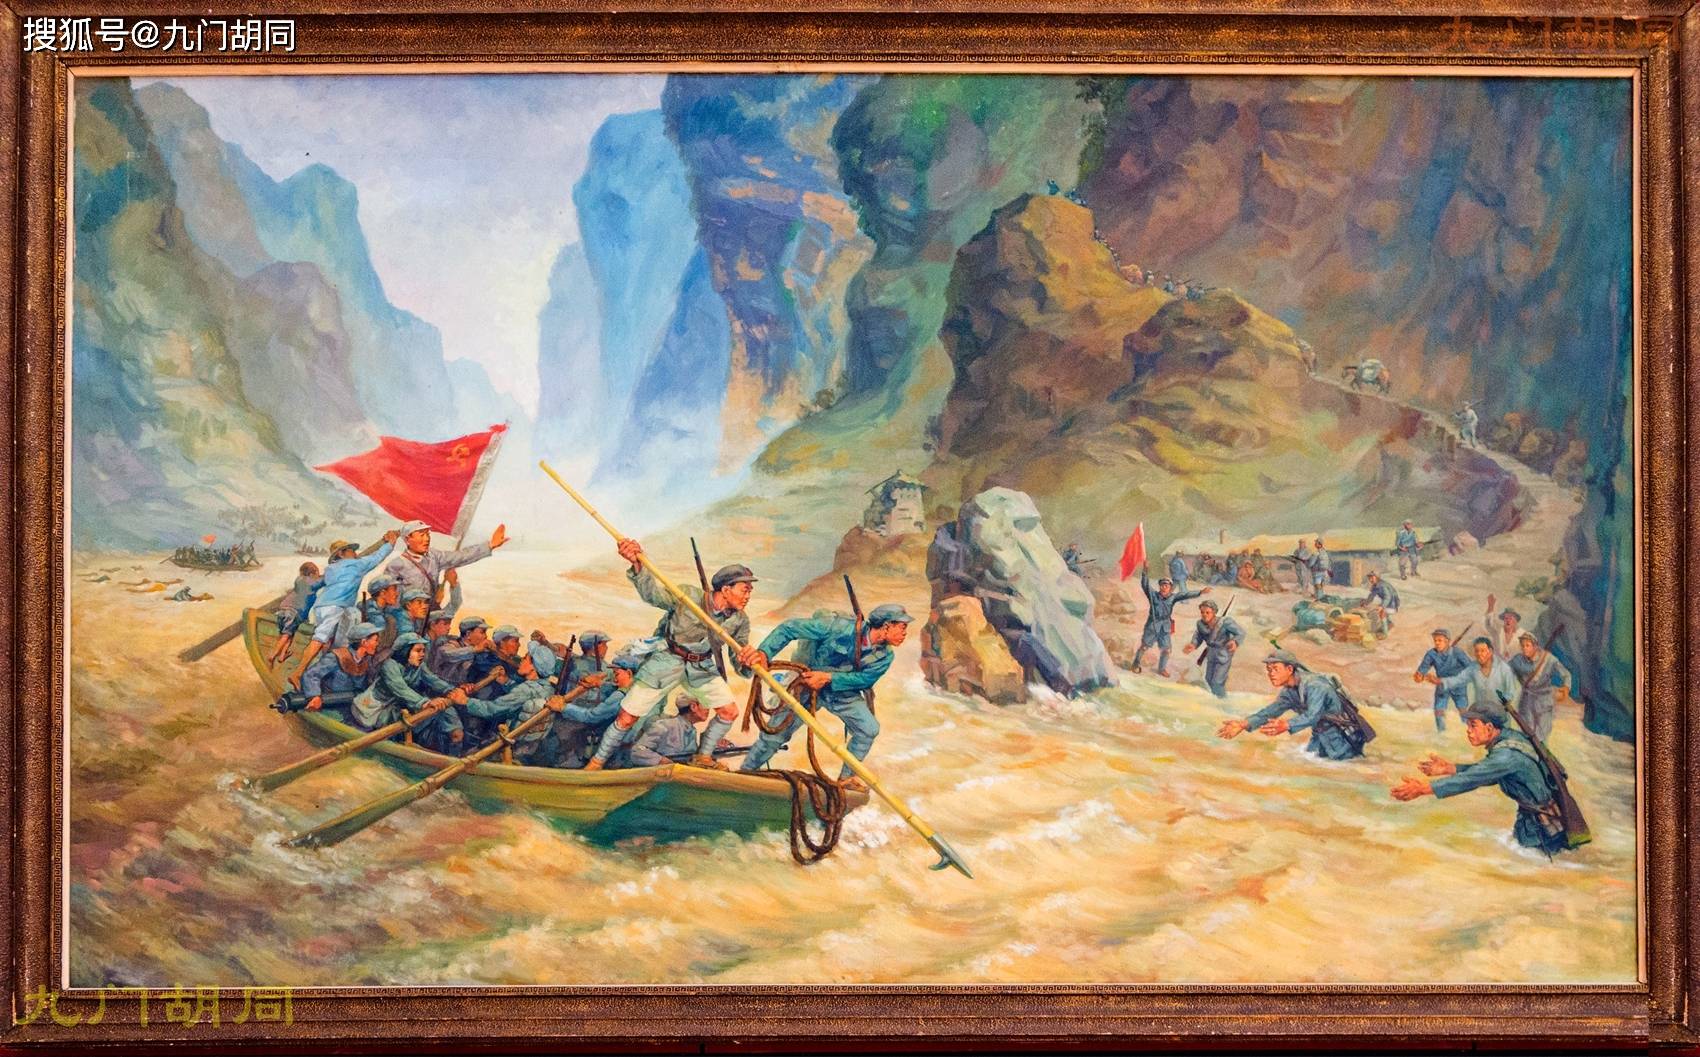 油画《强夺泸定桥》,作者:李宗津,年代:1951年.